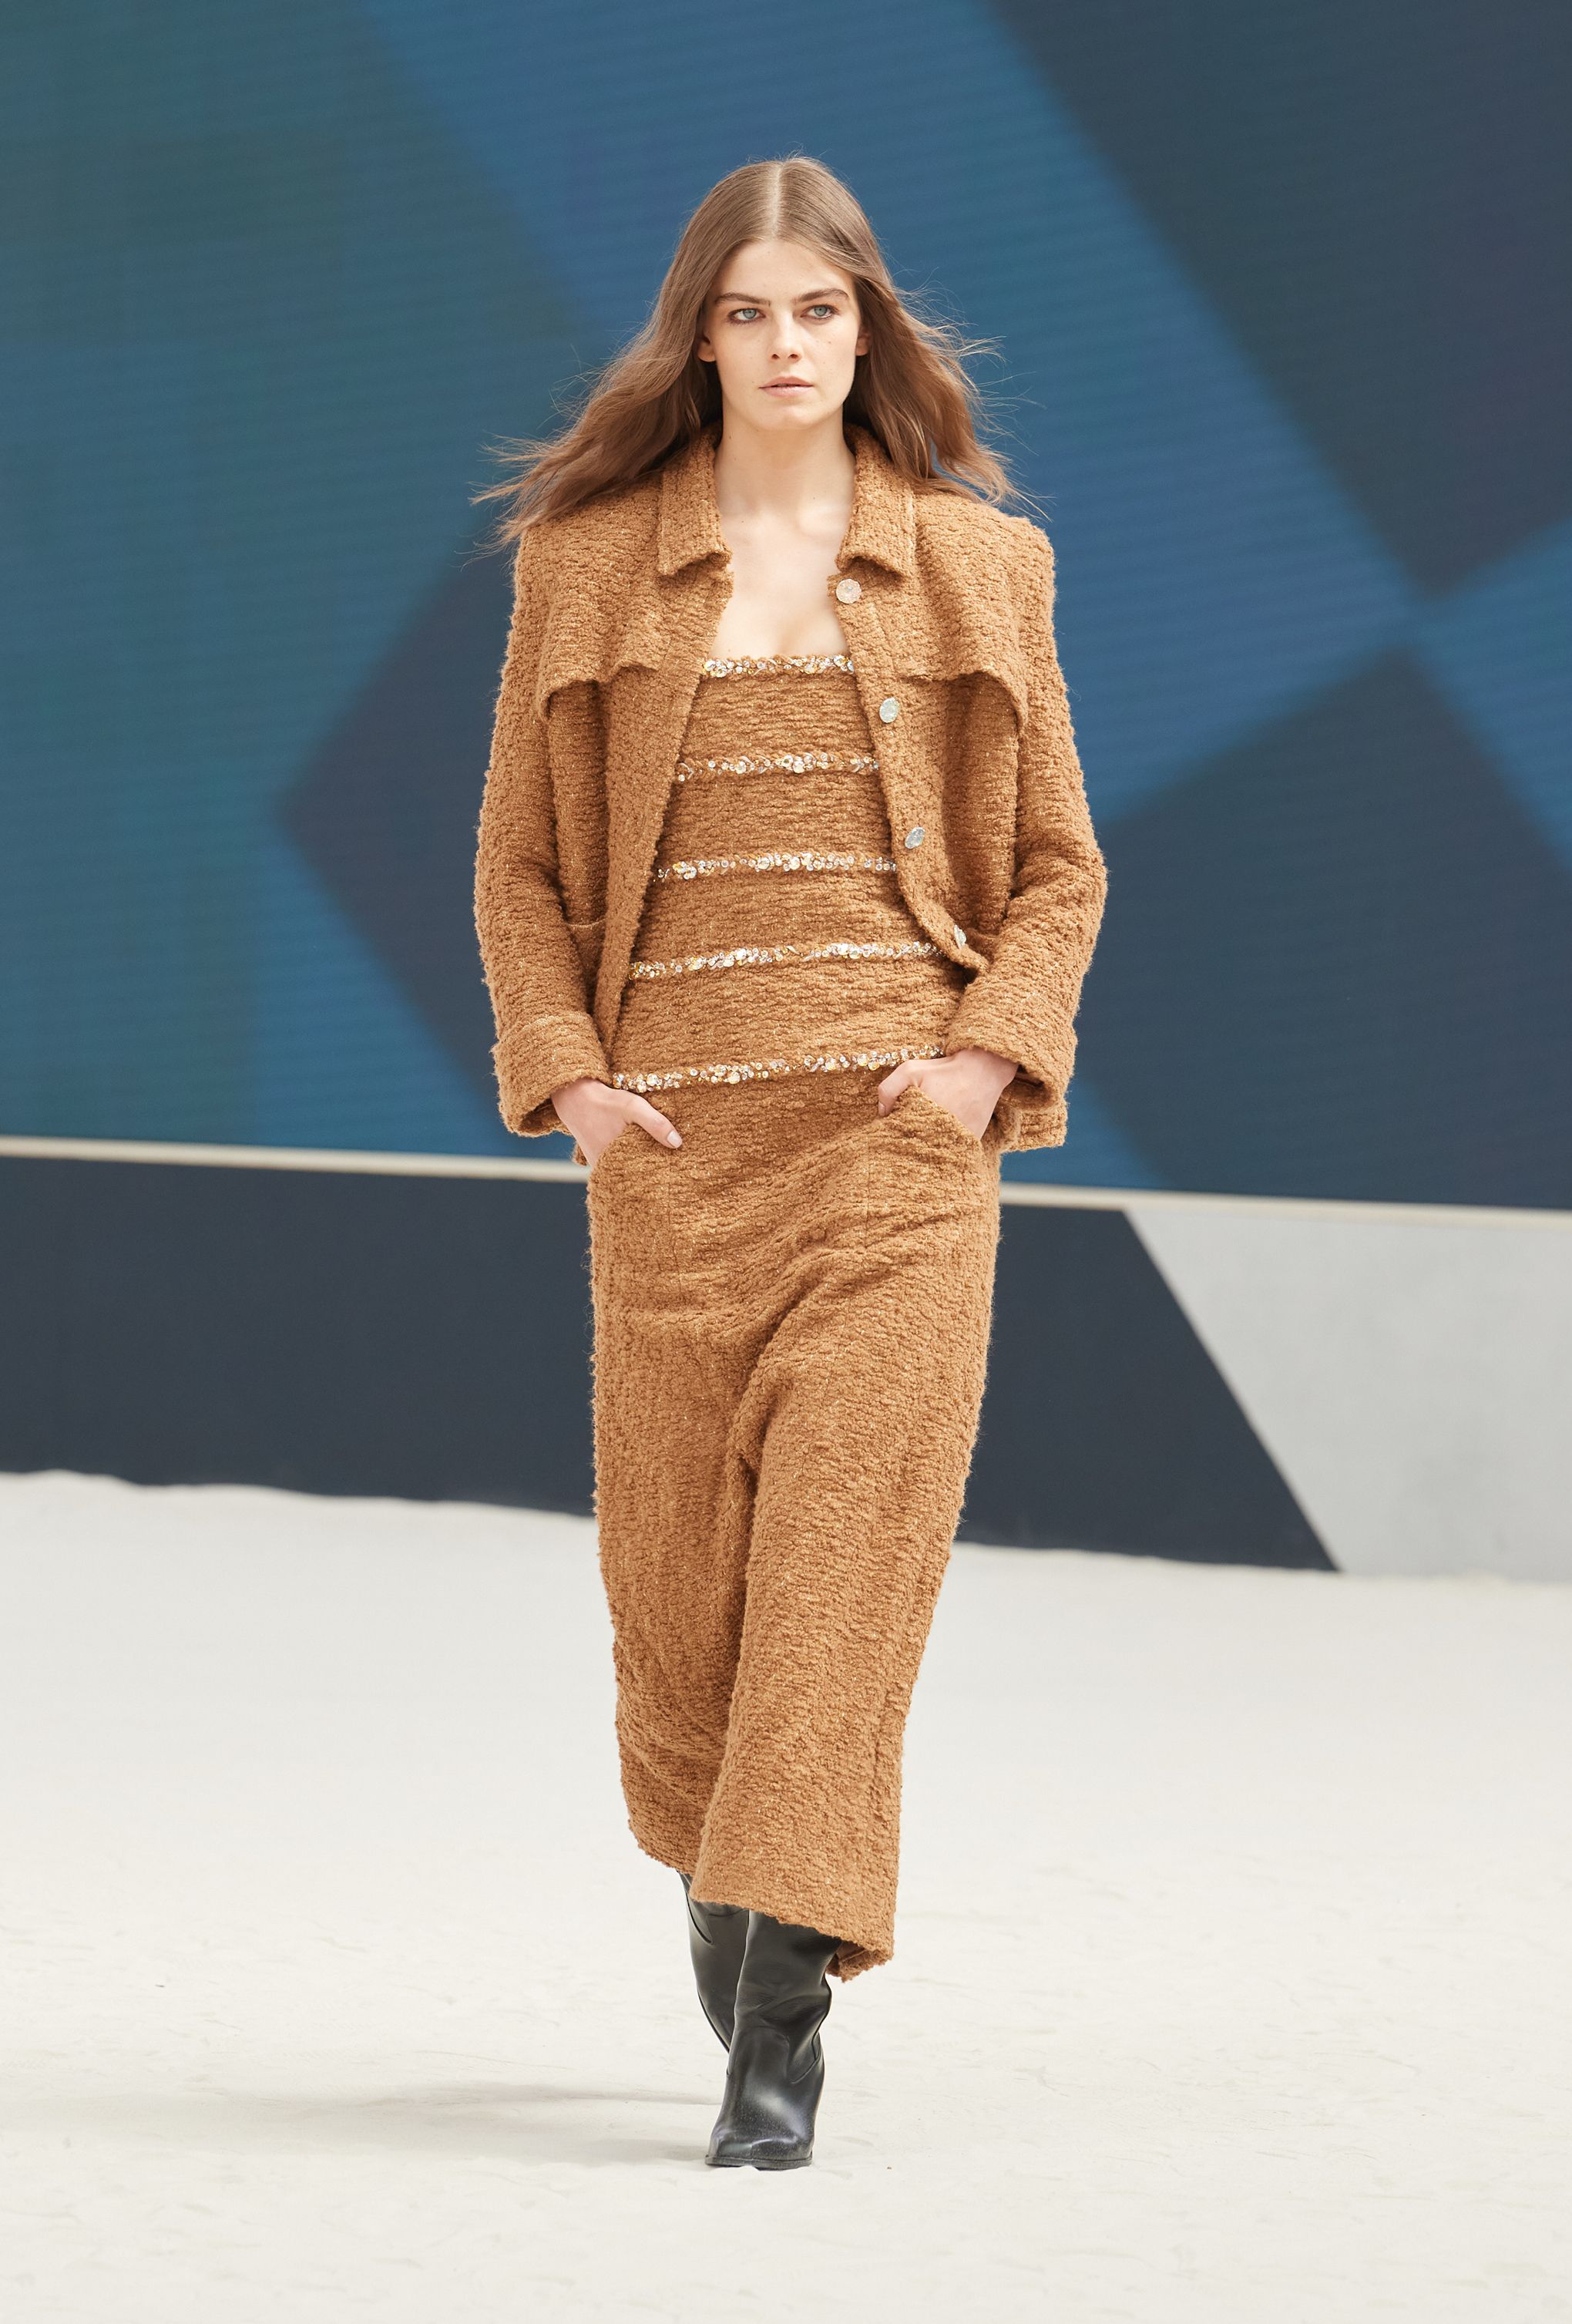 Chanel RE23 womenswear #33 - Tagwalk: The Fashion Search Engine